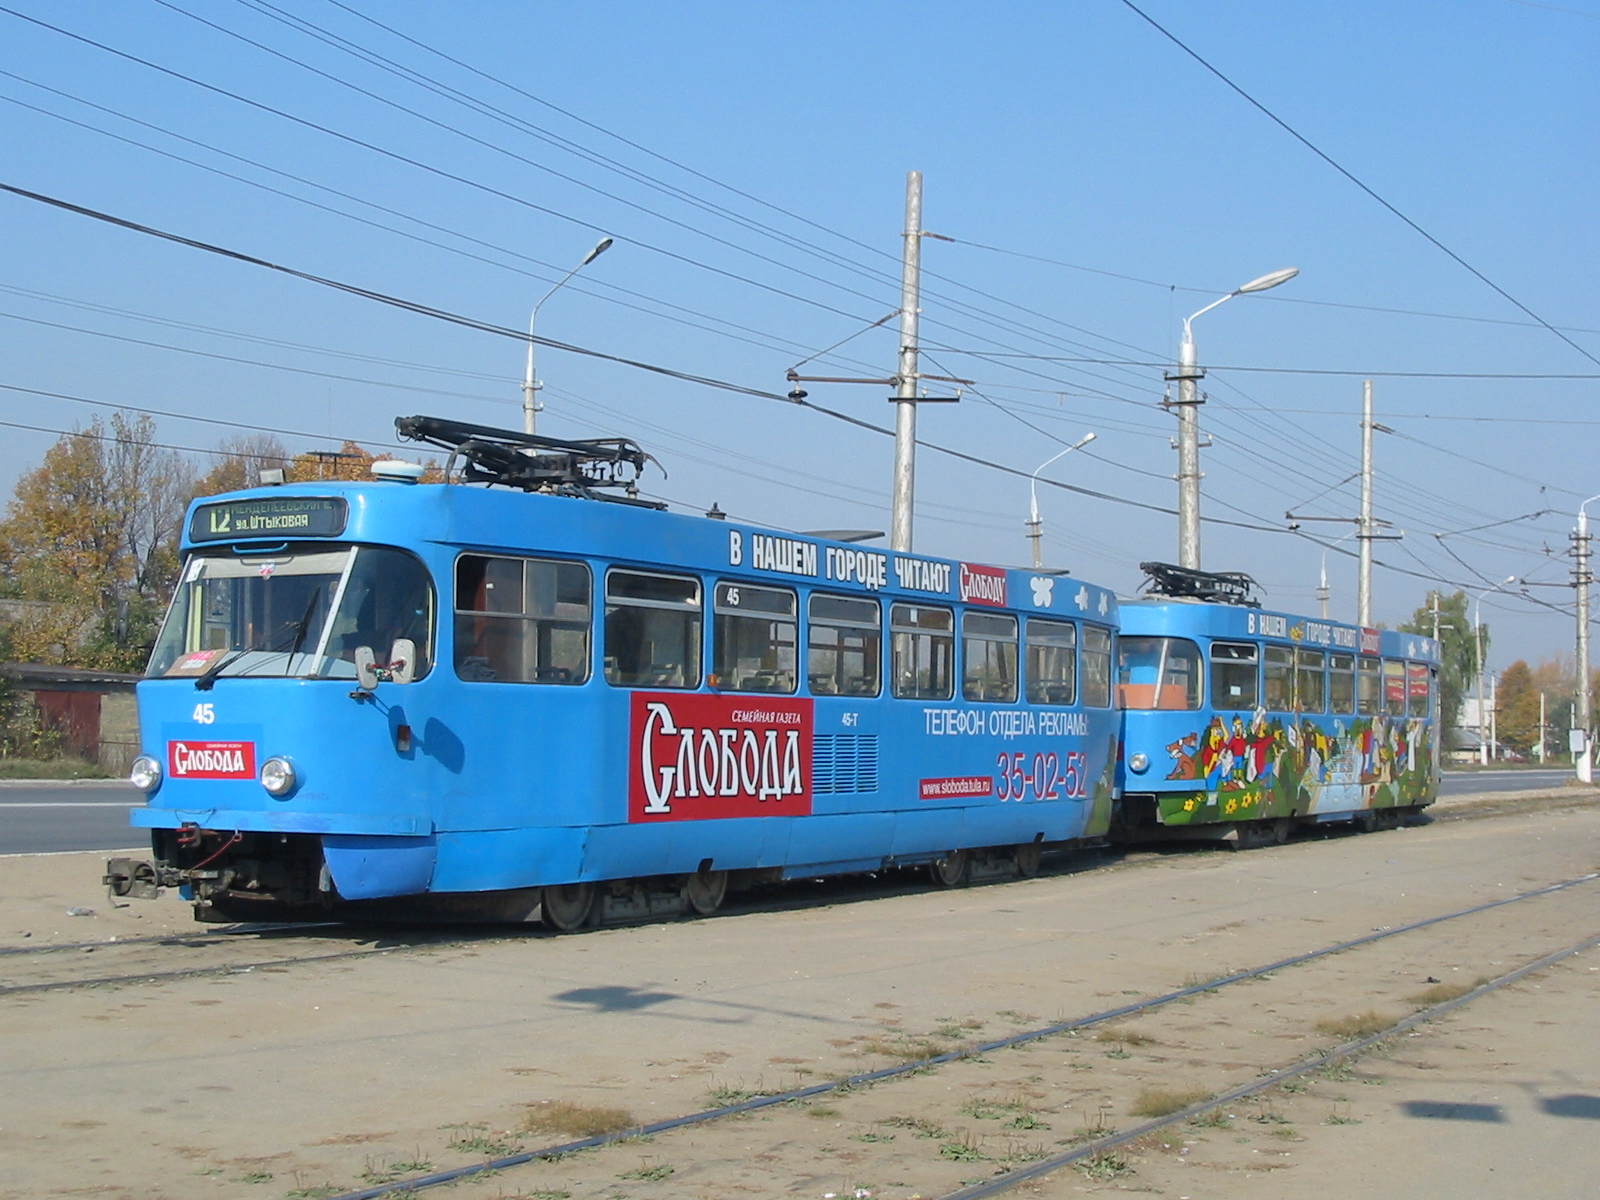 Трамвай Tatra T3DC1 45 ex-Шверин. Партия вагонов пришла в 2005 году, тогда казалось что началось возрождение трамвая, но оказалось что не началось